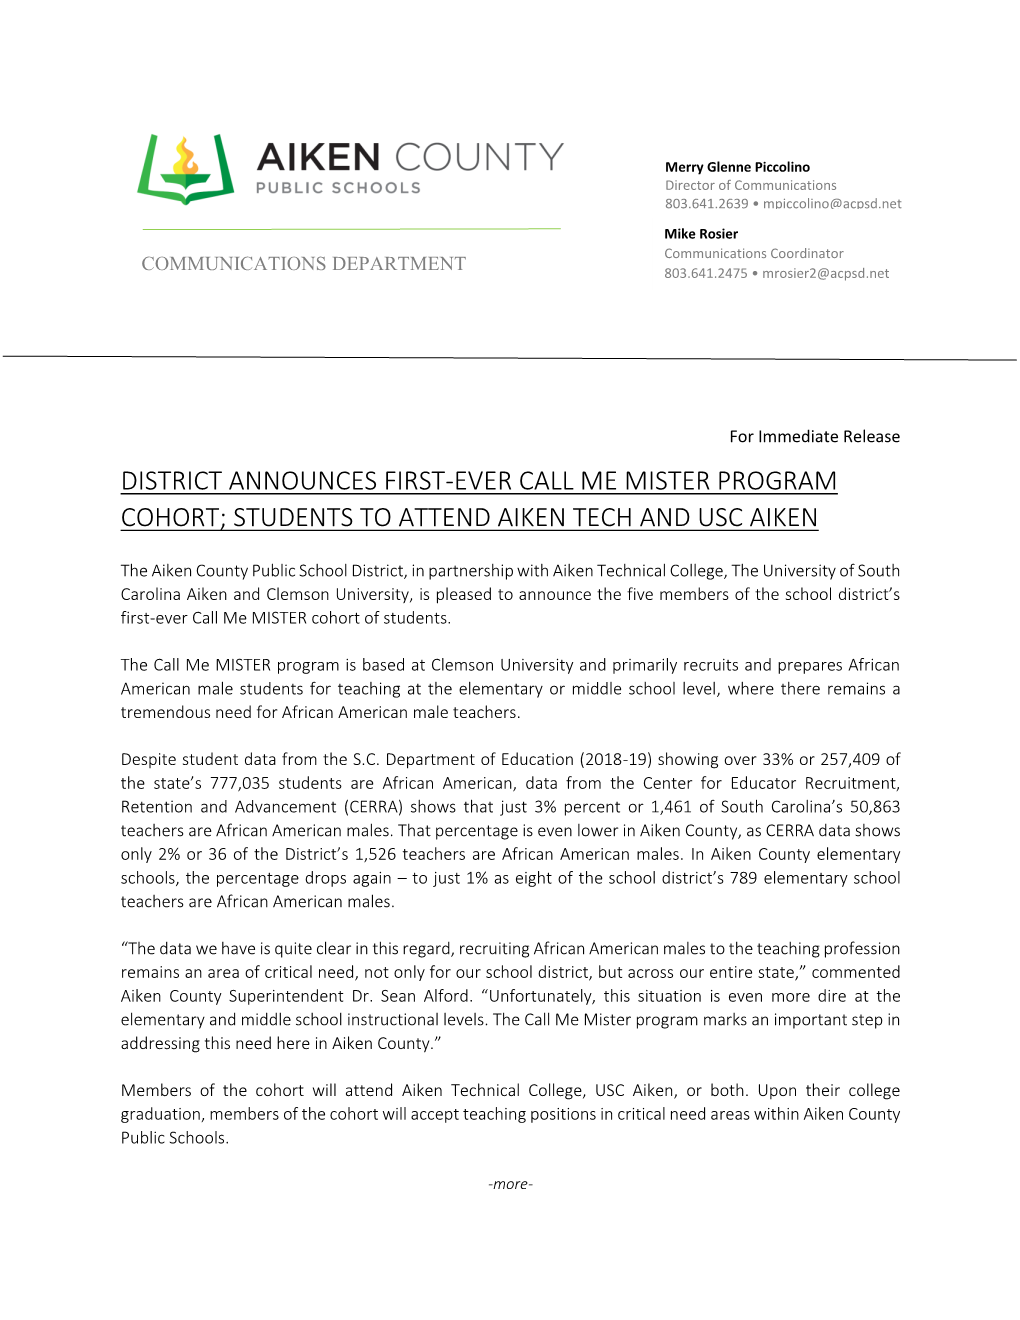 District Announces First-Ever Call Me Mister Program Cohort; Students to Attend Aiken Tech and Usc Aiken